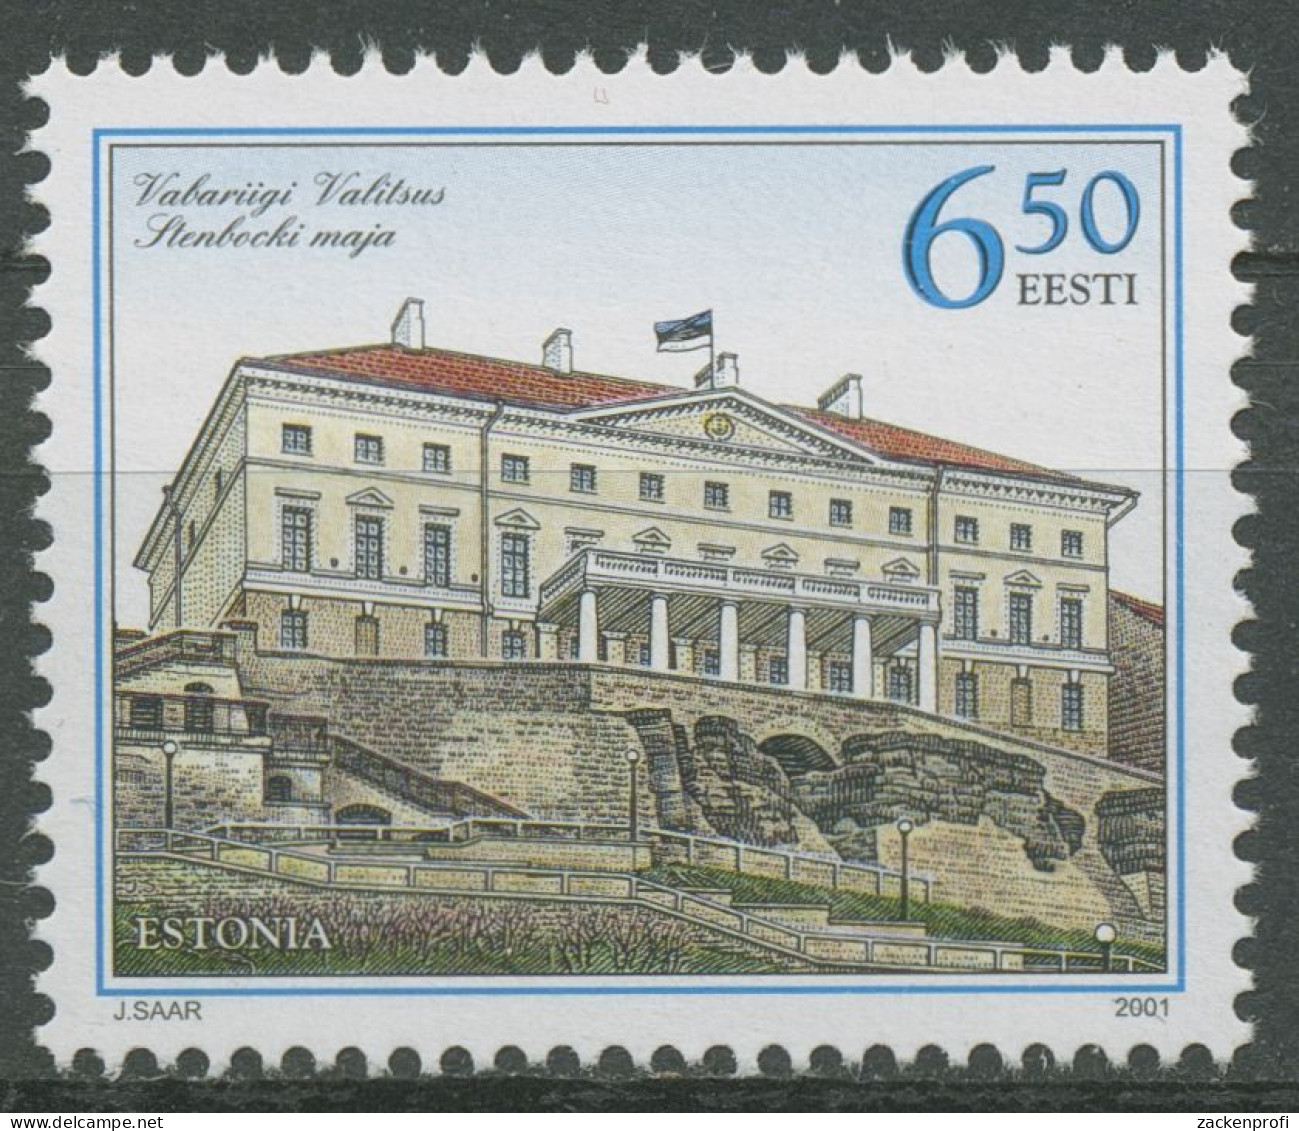 Estland 2001 Regierungssitz Stenbock-Palast Tallin 393 Postfrisch - Estland